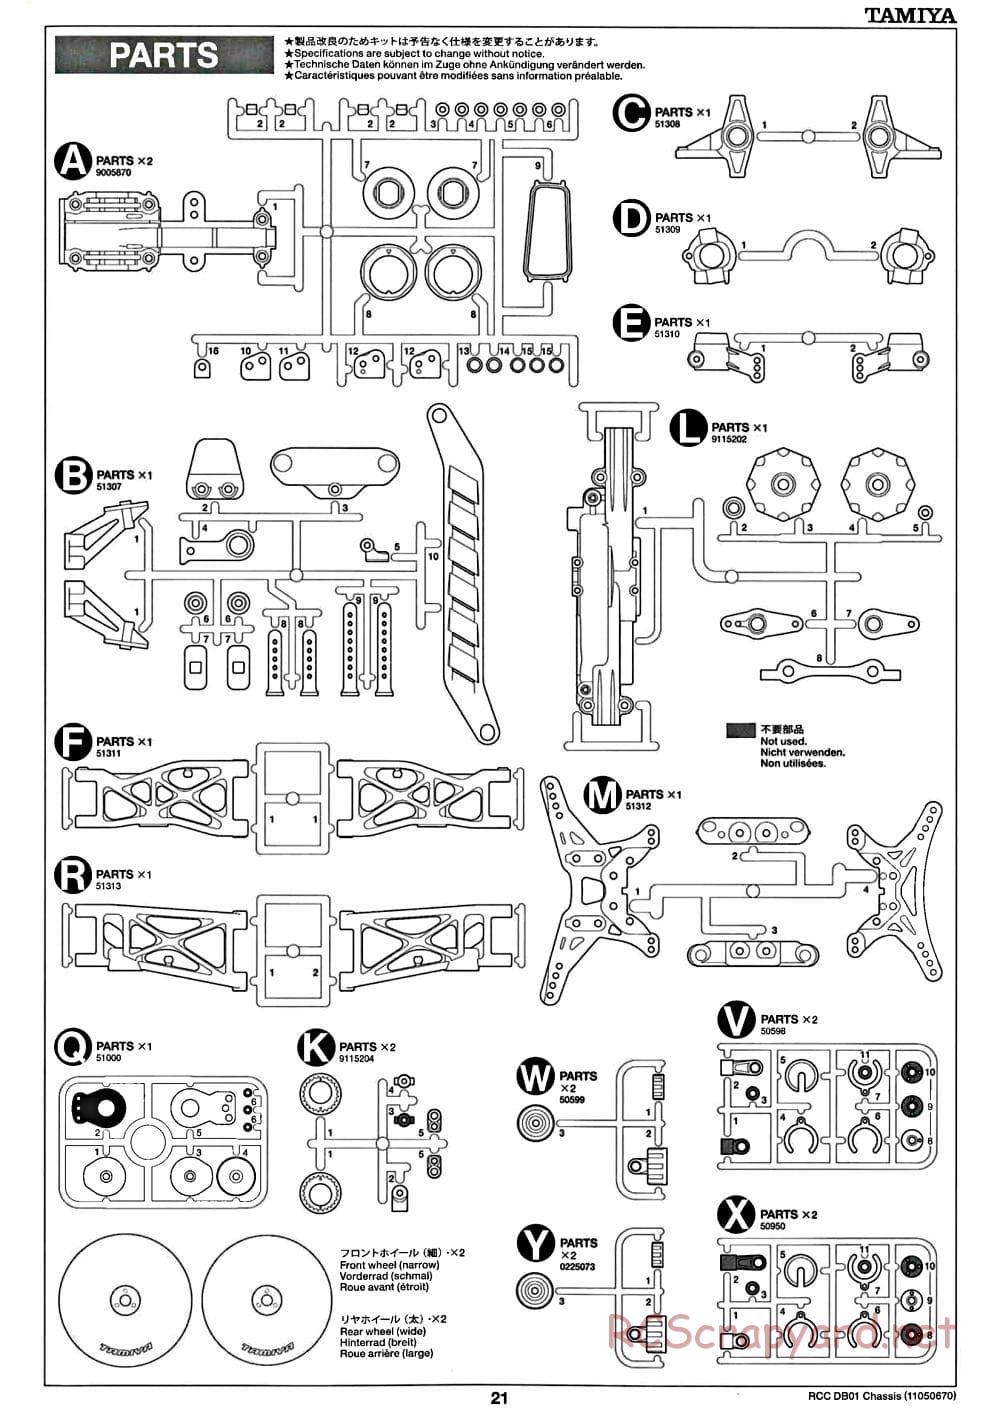 Tamiya - DB-01 Chassis - Manual - Page 21